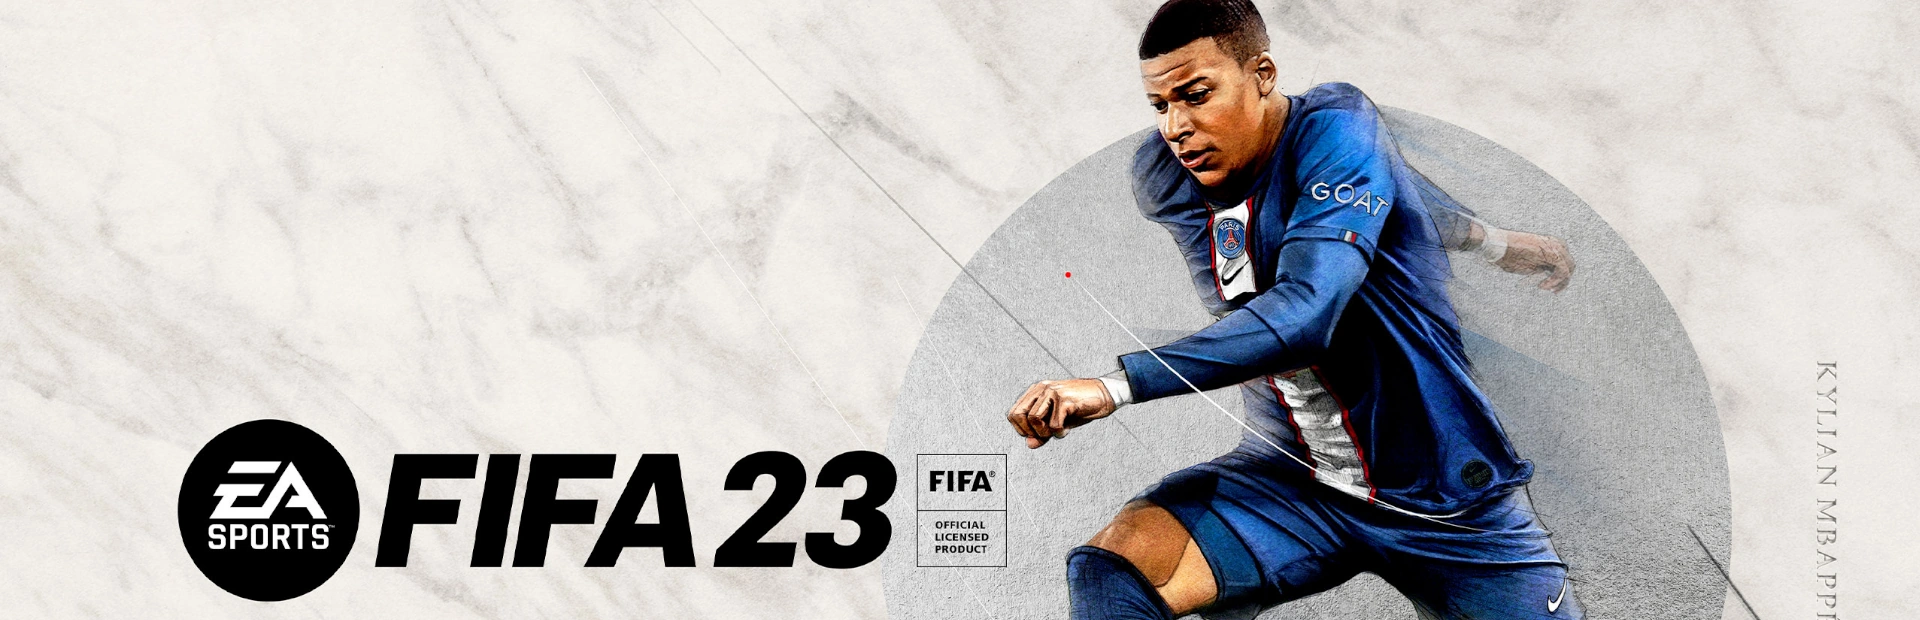 دانلود بازی FIFA 23 برای کامپیوتر بک آپ استیم | گیمباتو